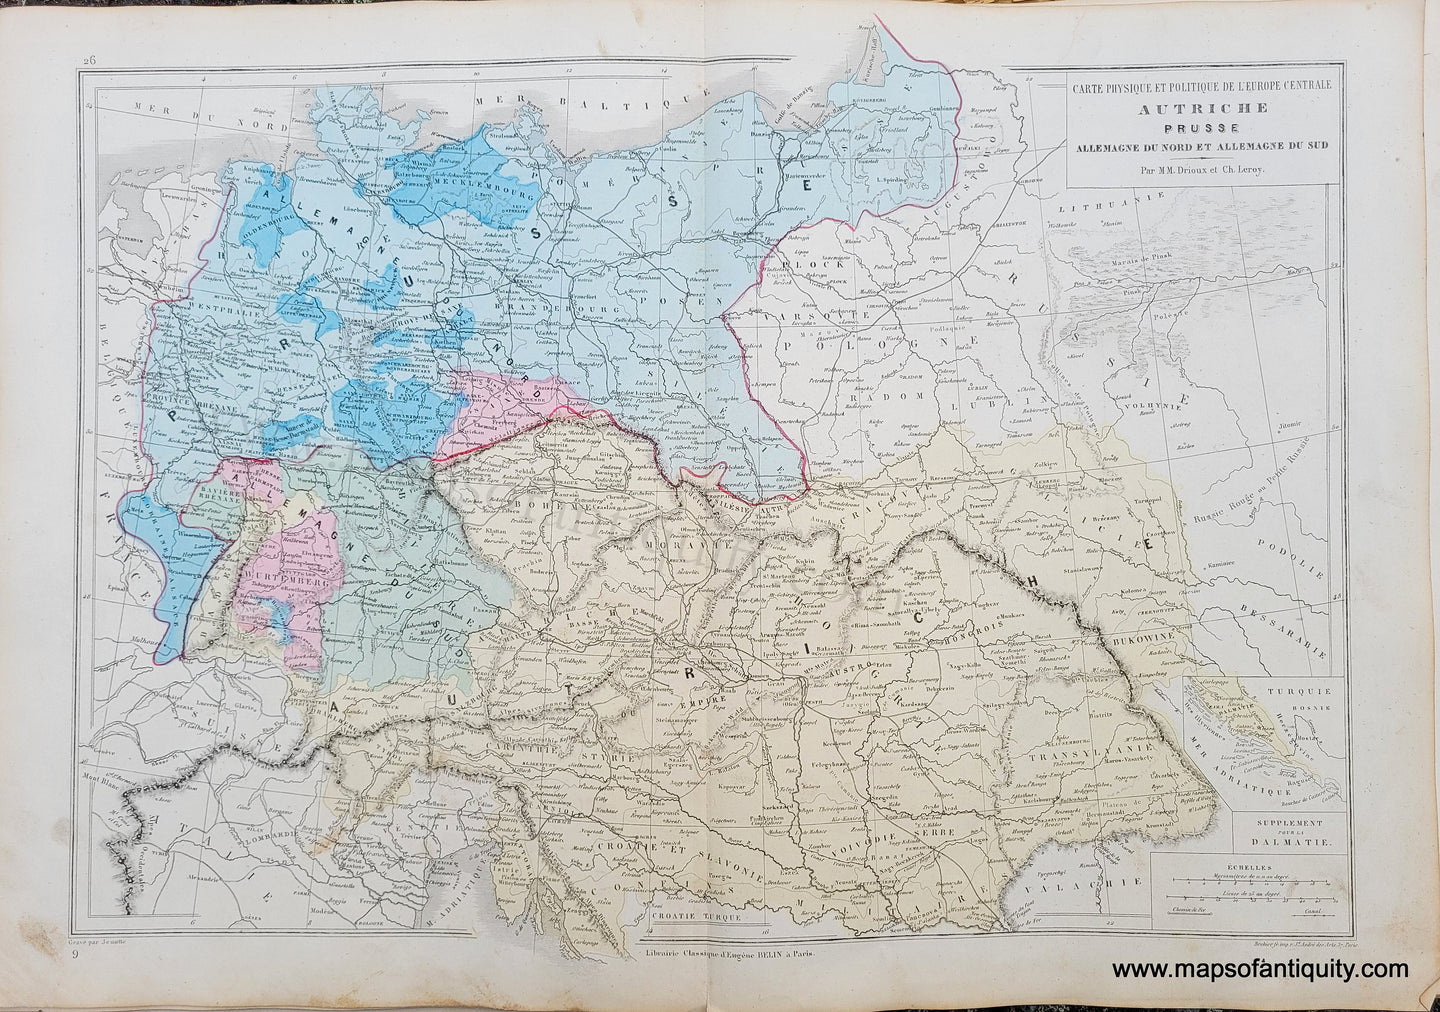 Genuine-Antique-Map-Carte-Physique-et-Politique-de-l'Europe-Centrale-Autriche,-Prusse,-Allemagne-du-Nord-et-Allemagne-du-Sud---Physical-and-Political-Map-of-Central-Europe-Austria,-Prussia,-North-Germany-and-South-Germany-1875-Drioux-&-Leroy-EUR2830-Maps-Of-Antiquity